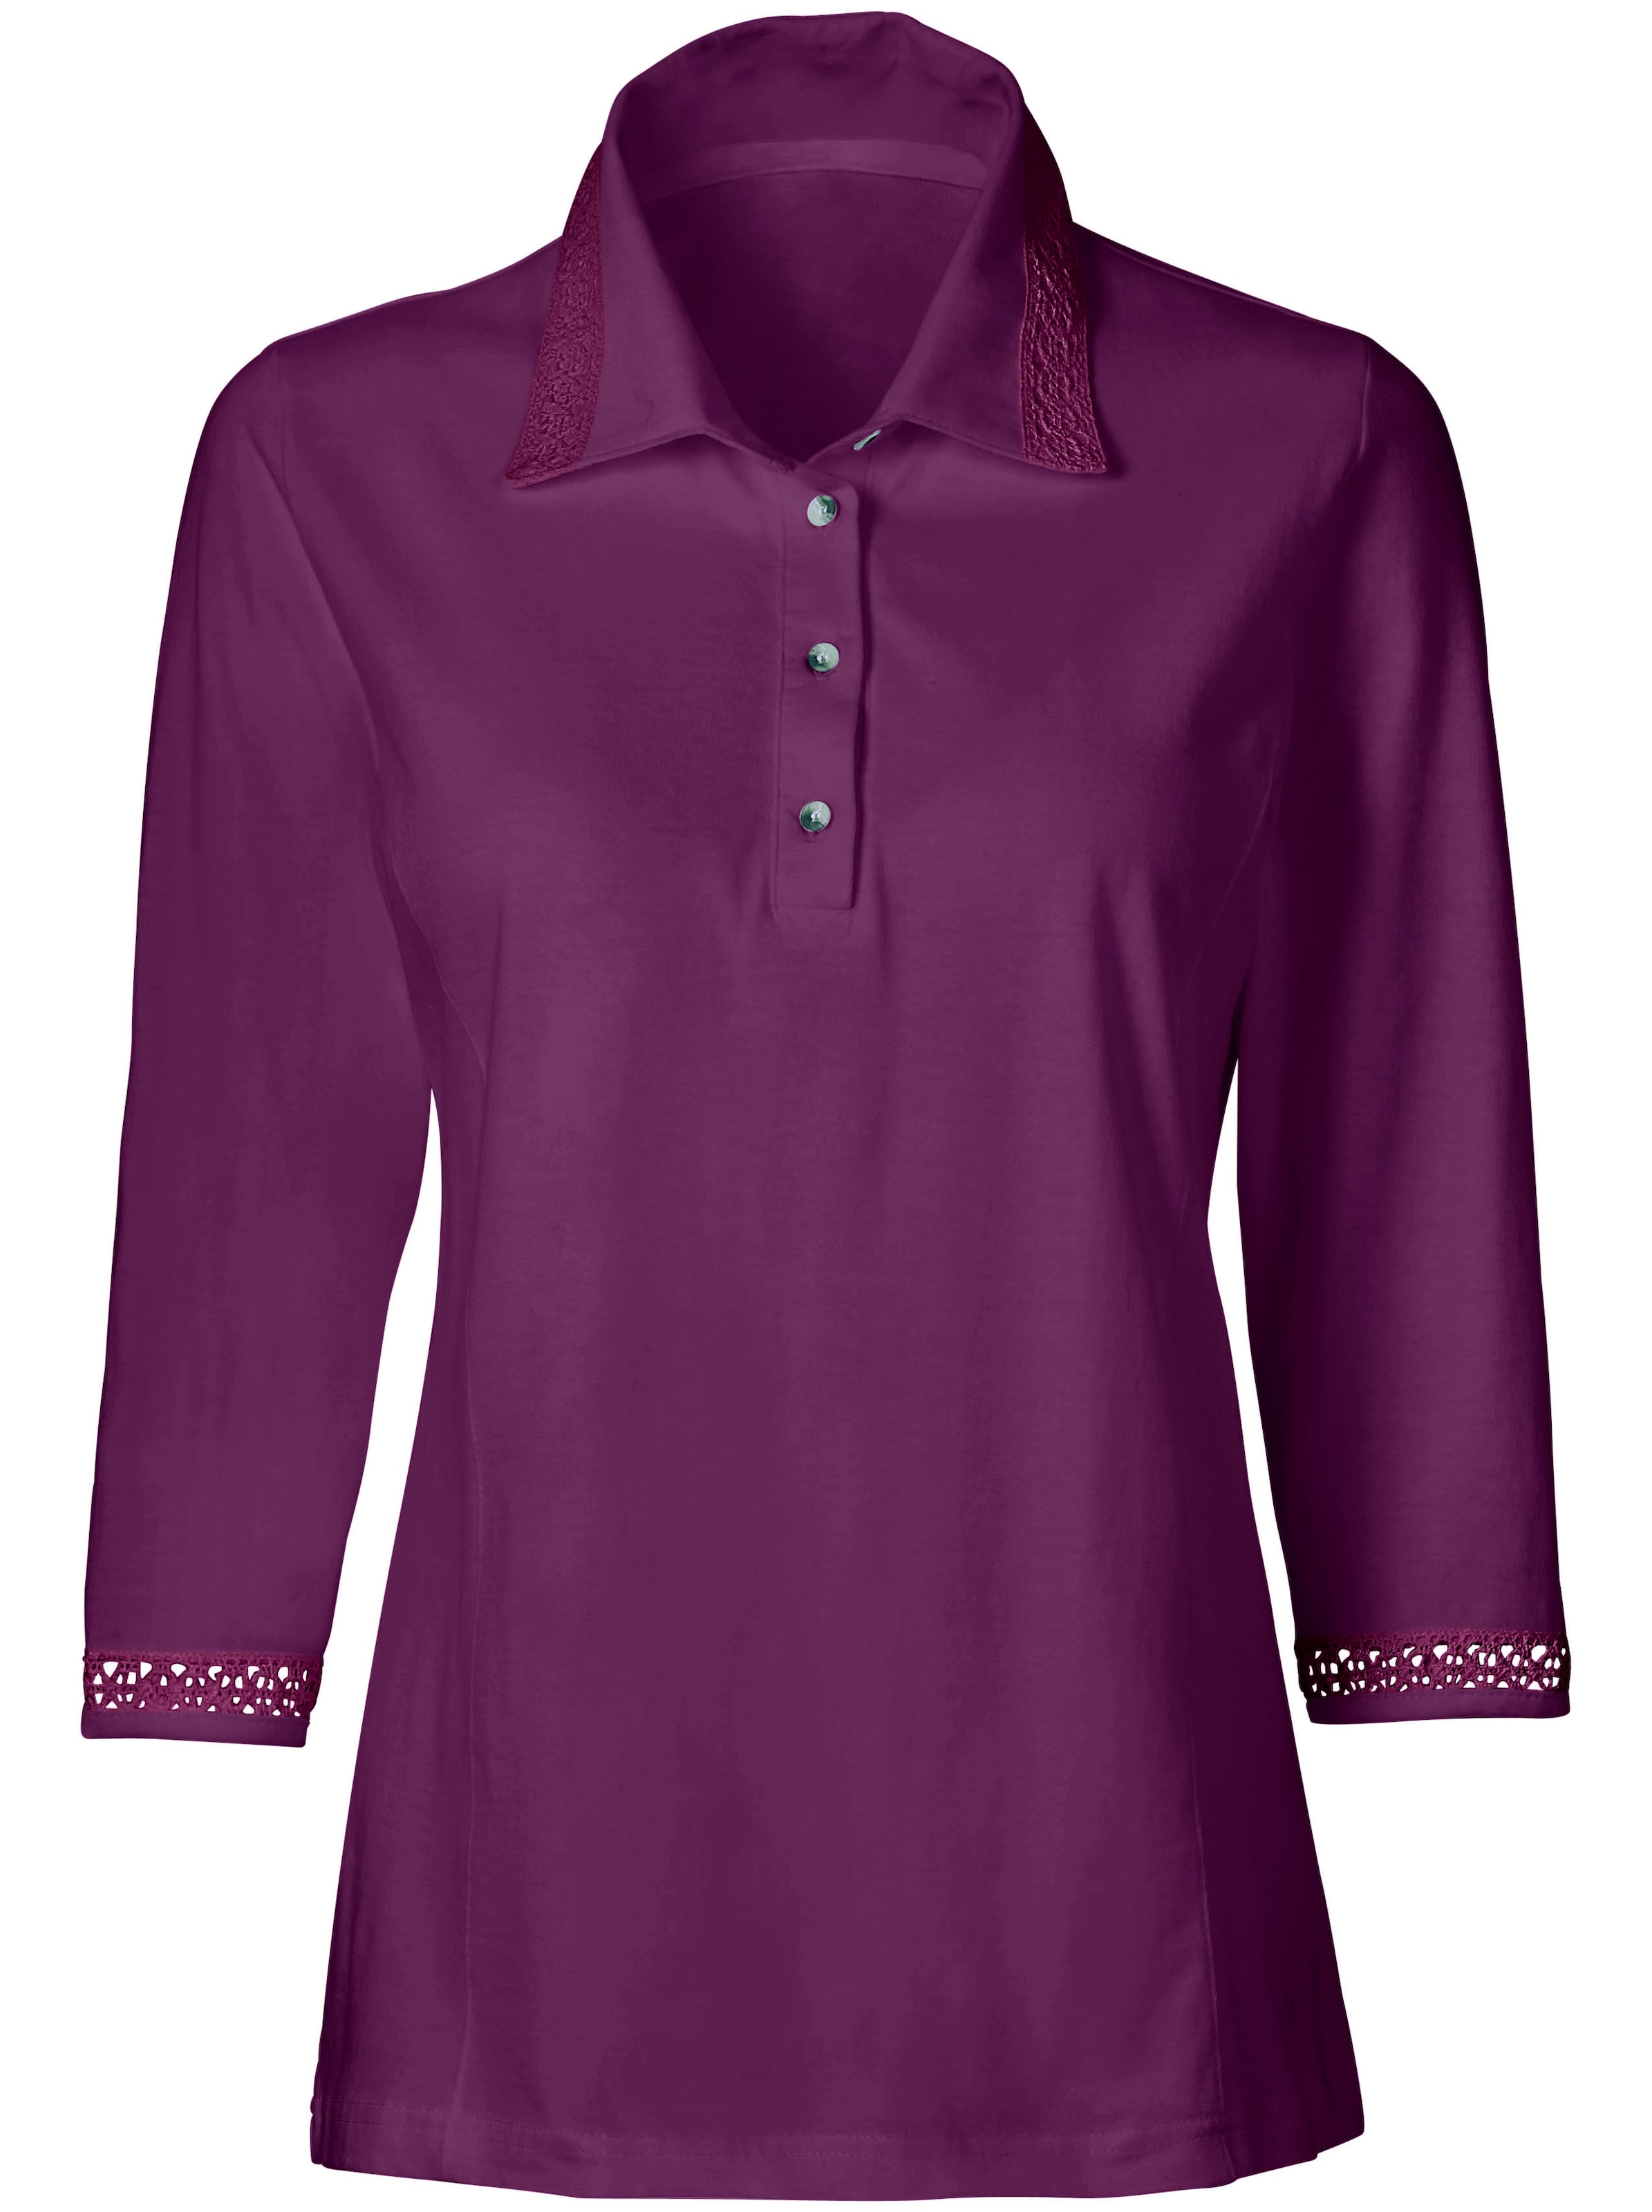 Witt Damen Poloshirt, violett